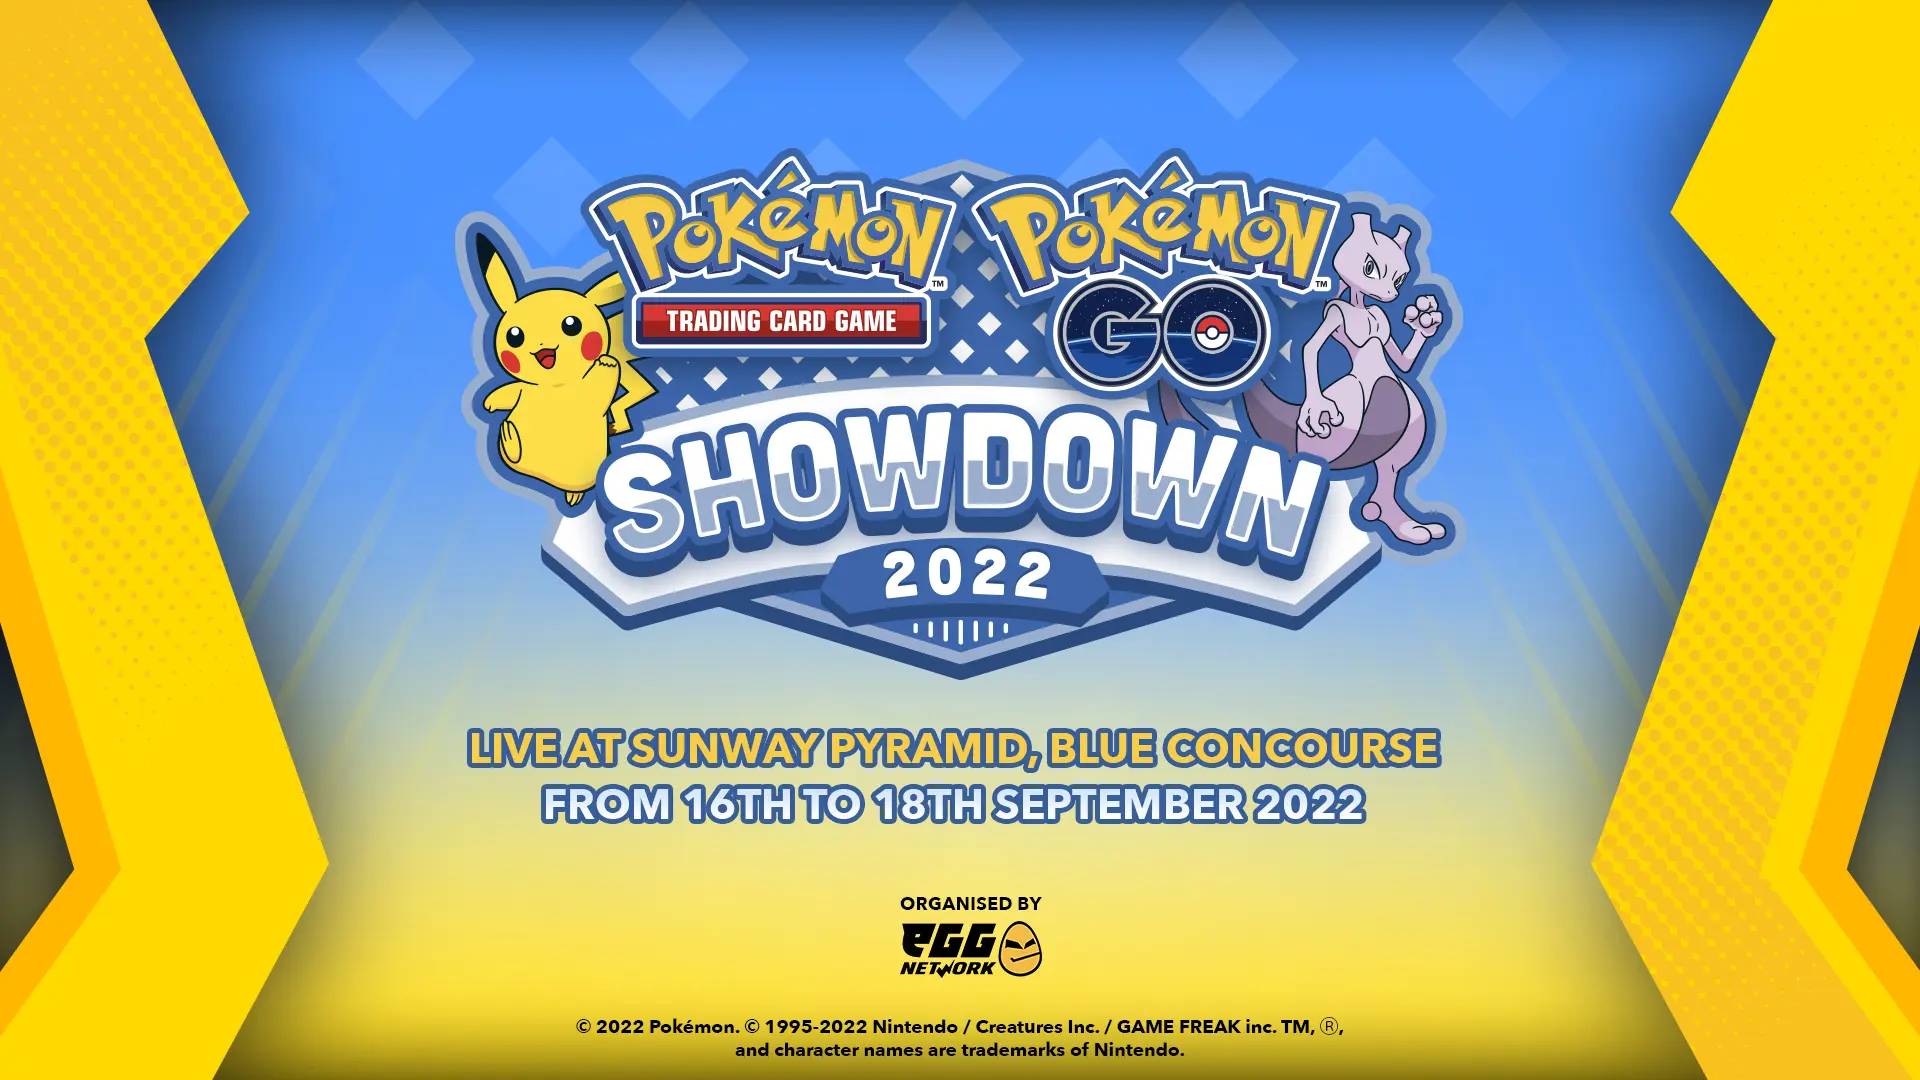 Pokémon TCG: Pokémon GO Showdown 2022 at Sunway Pyramid